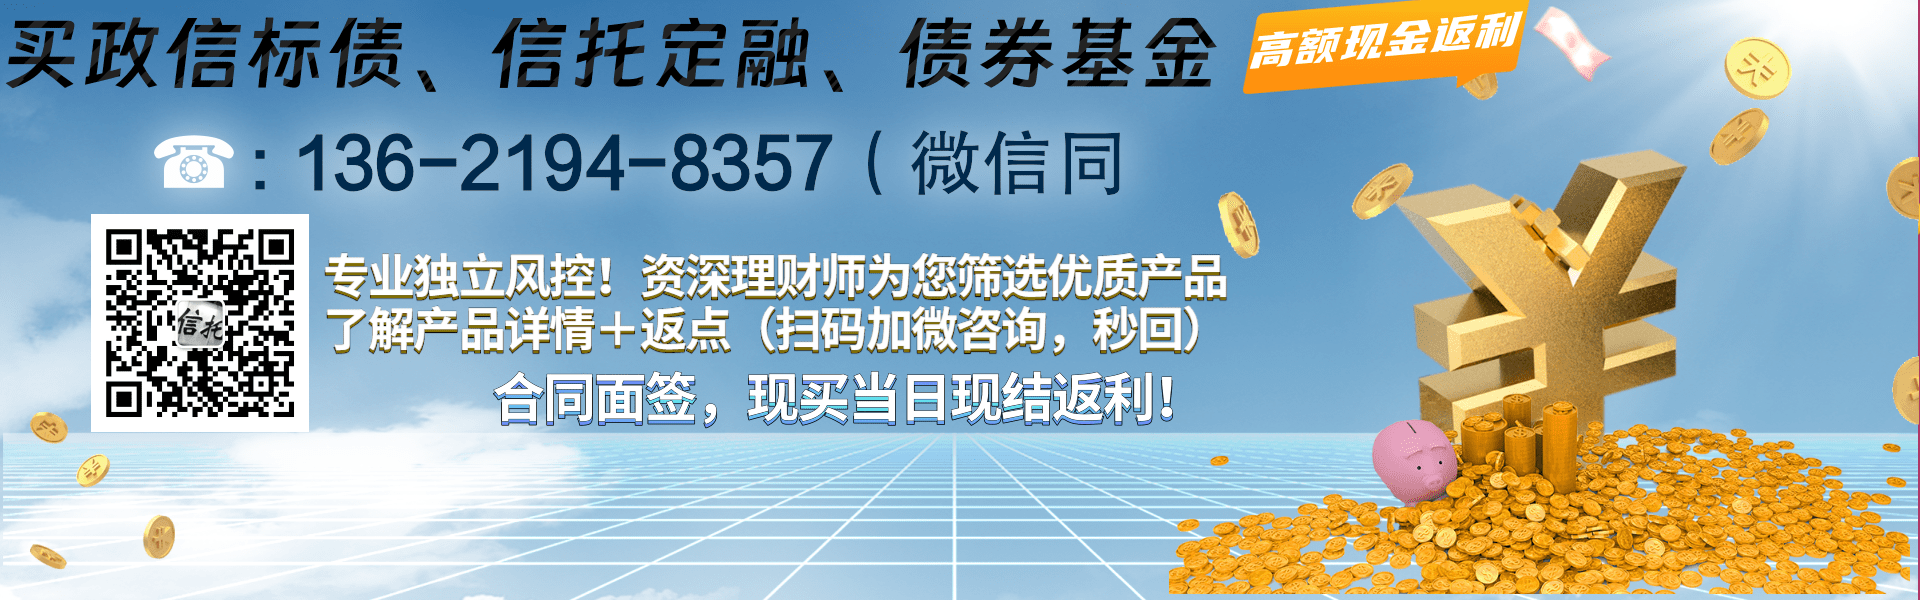 国企信托—20号重庆三峡区域标债集合资金信托计划